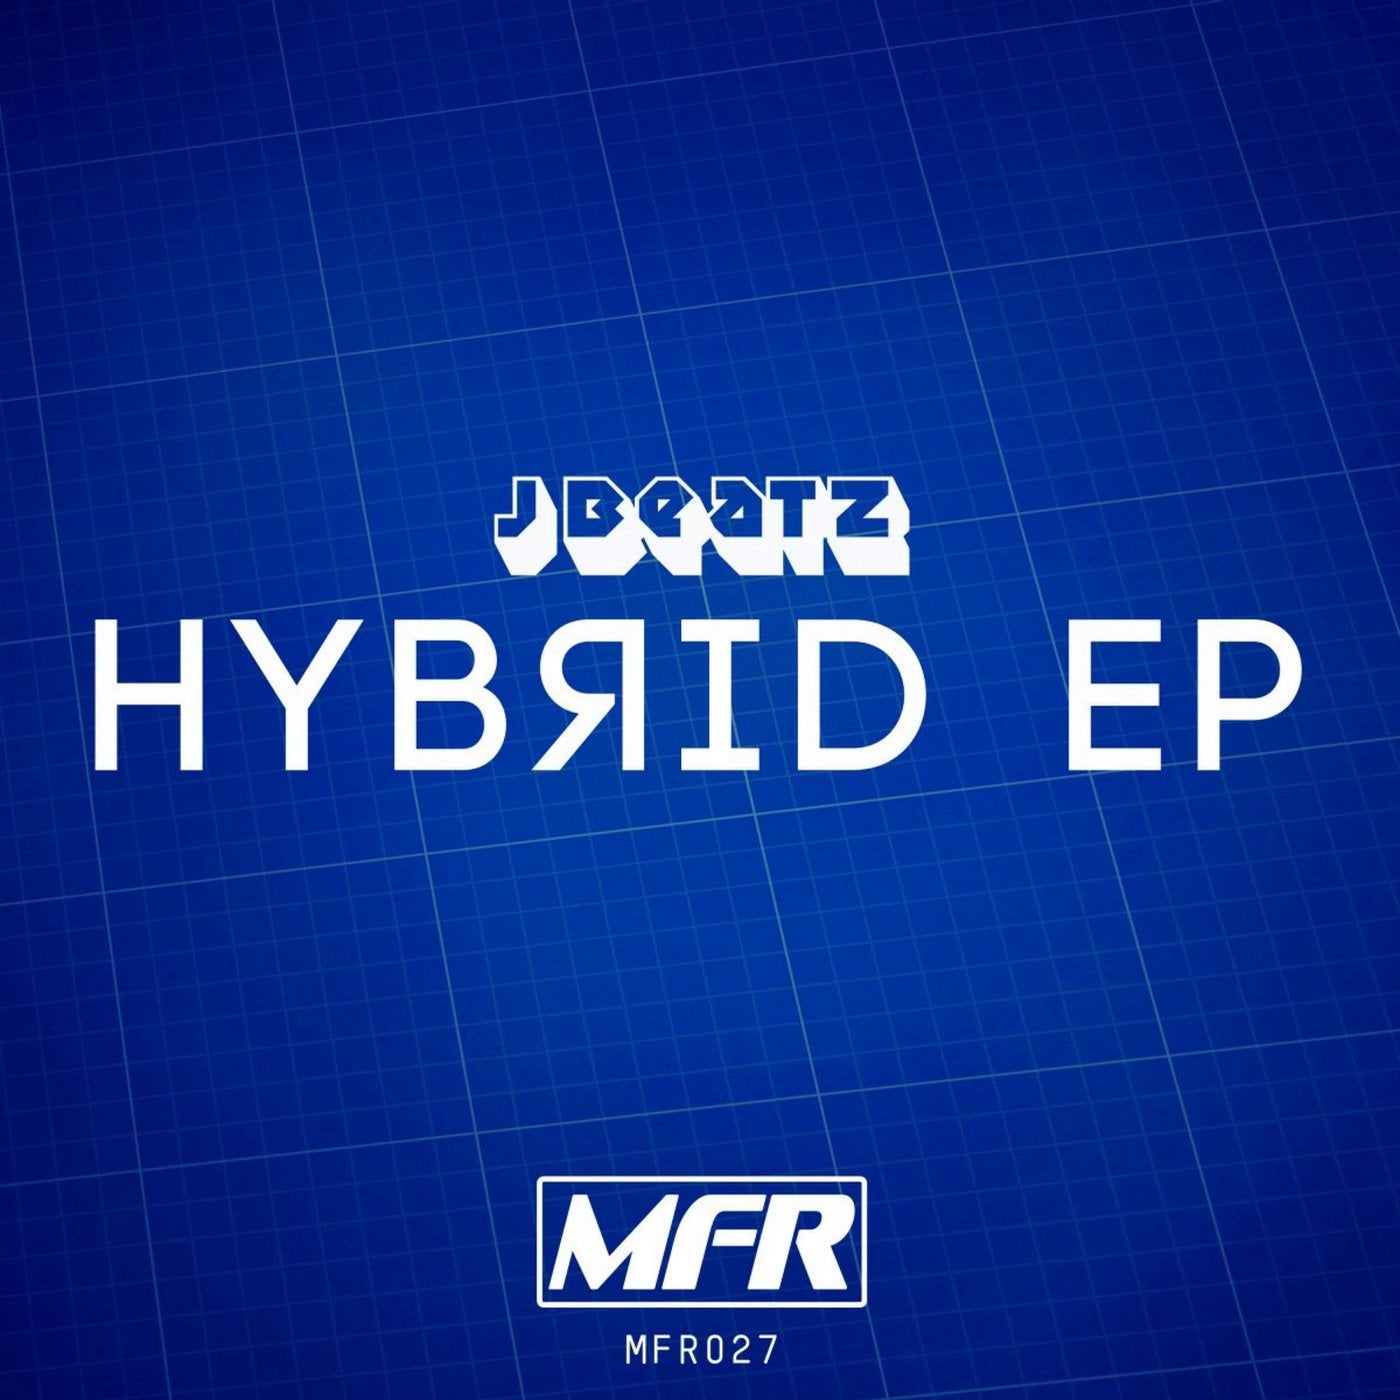 Hybrid EP